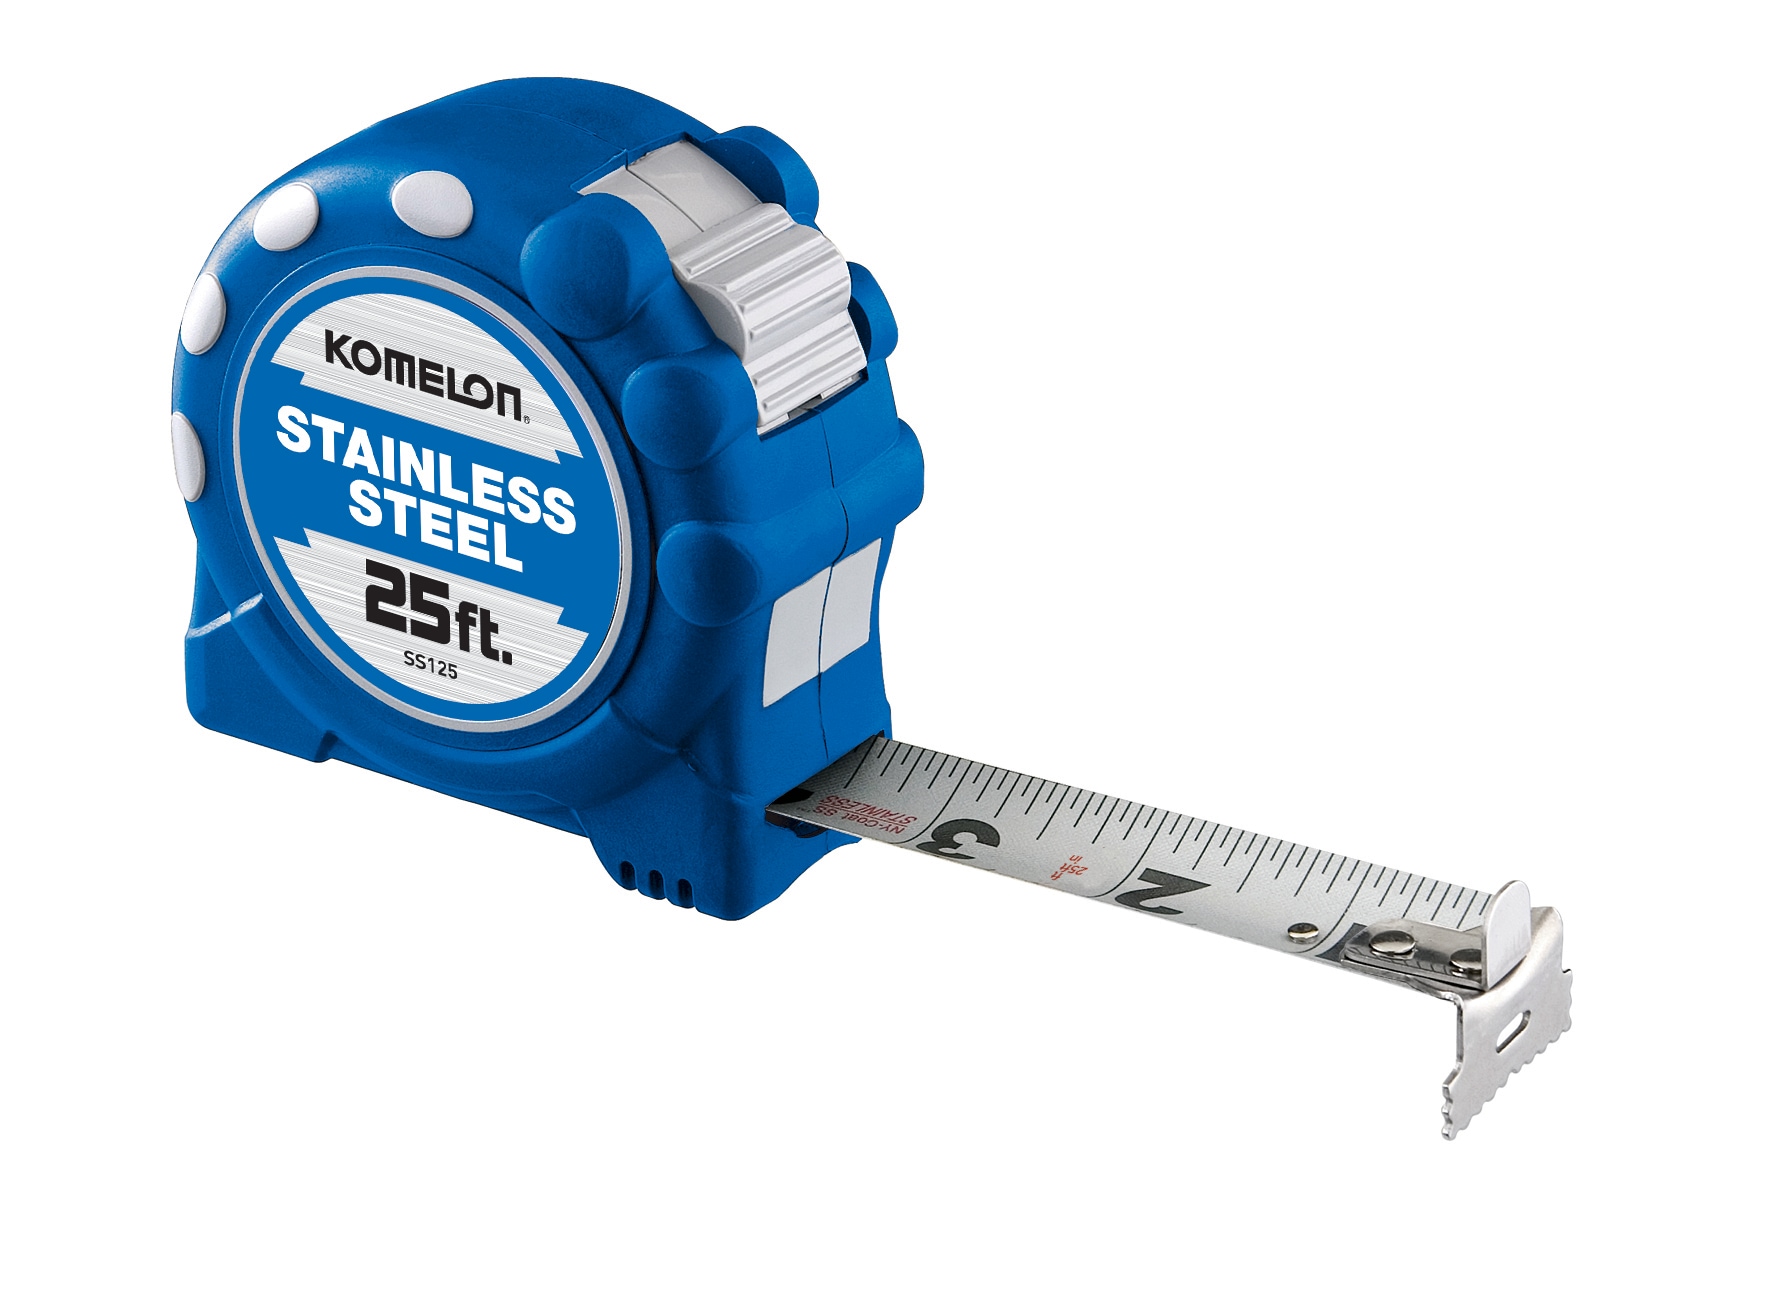 Stainless Steel Anti-corrosion Retractable Metric Ruler-25ft Tape Measure,  Skeleton Waterproof Tape Retractable Metric Tape Measure (3m 16mm)